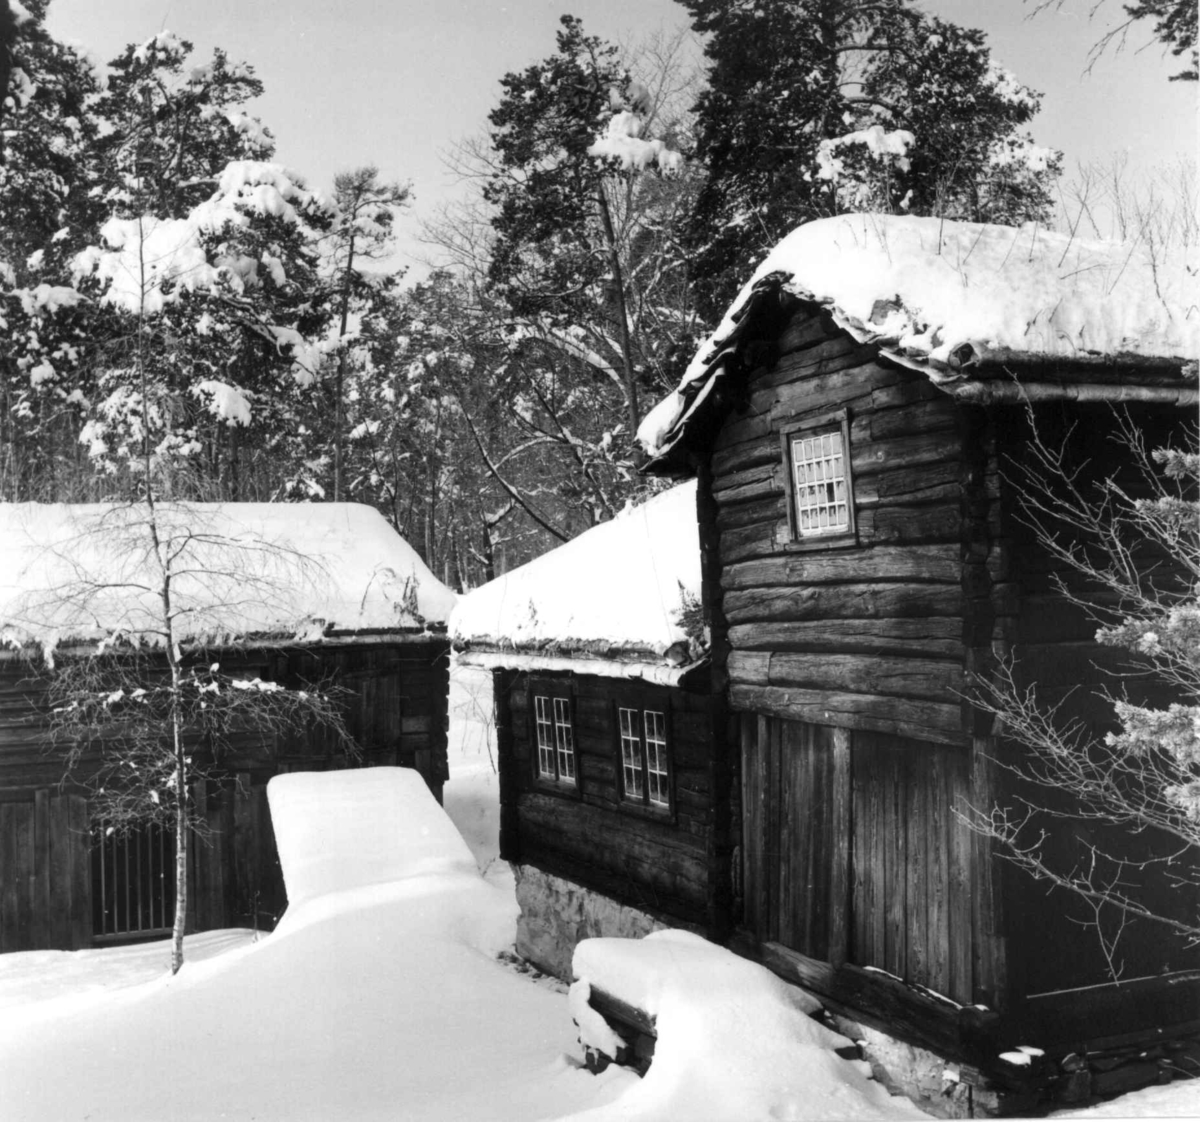 Oppstugu fra Bakarplassen, Mjøen i Oppdal, Sør-Trøndelag. Fotografert på Norsk folkemuseum, mars 1957.